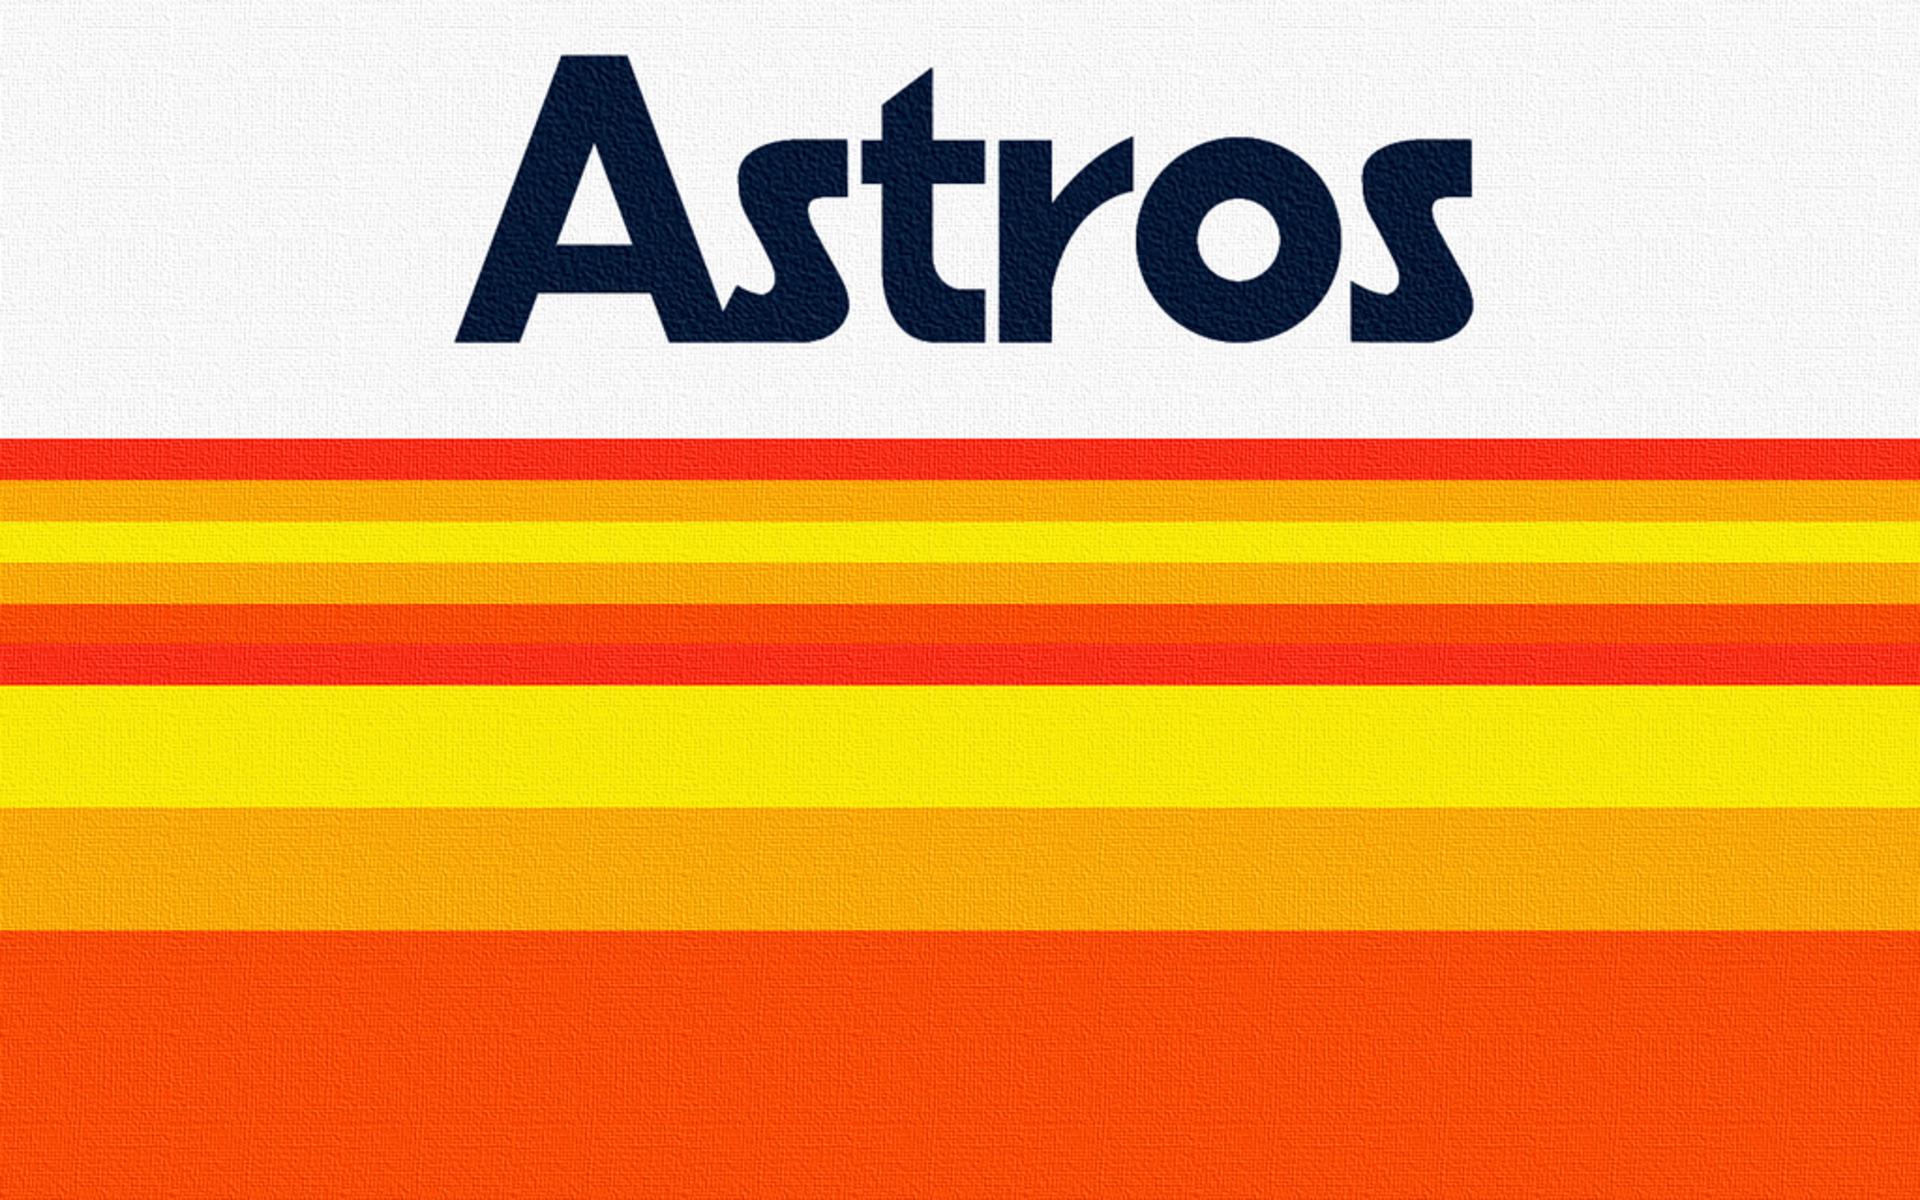 Astros Vintage Team Wallpaper HD Res